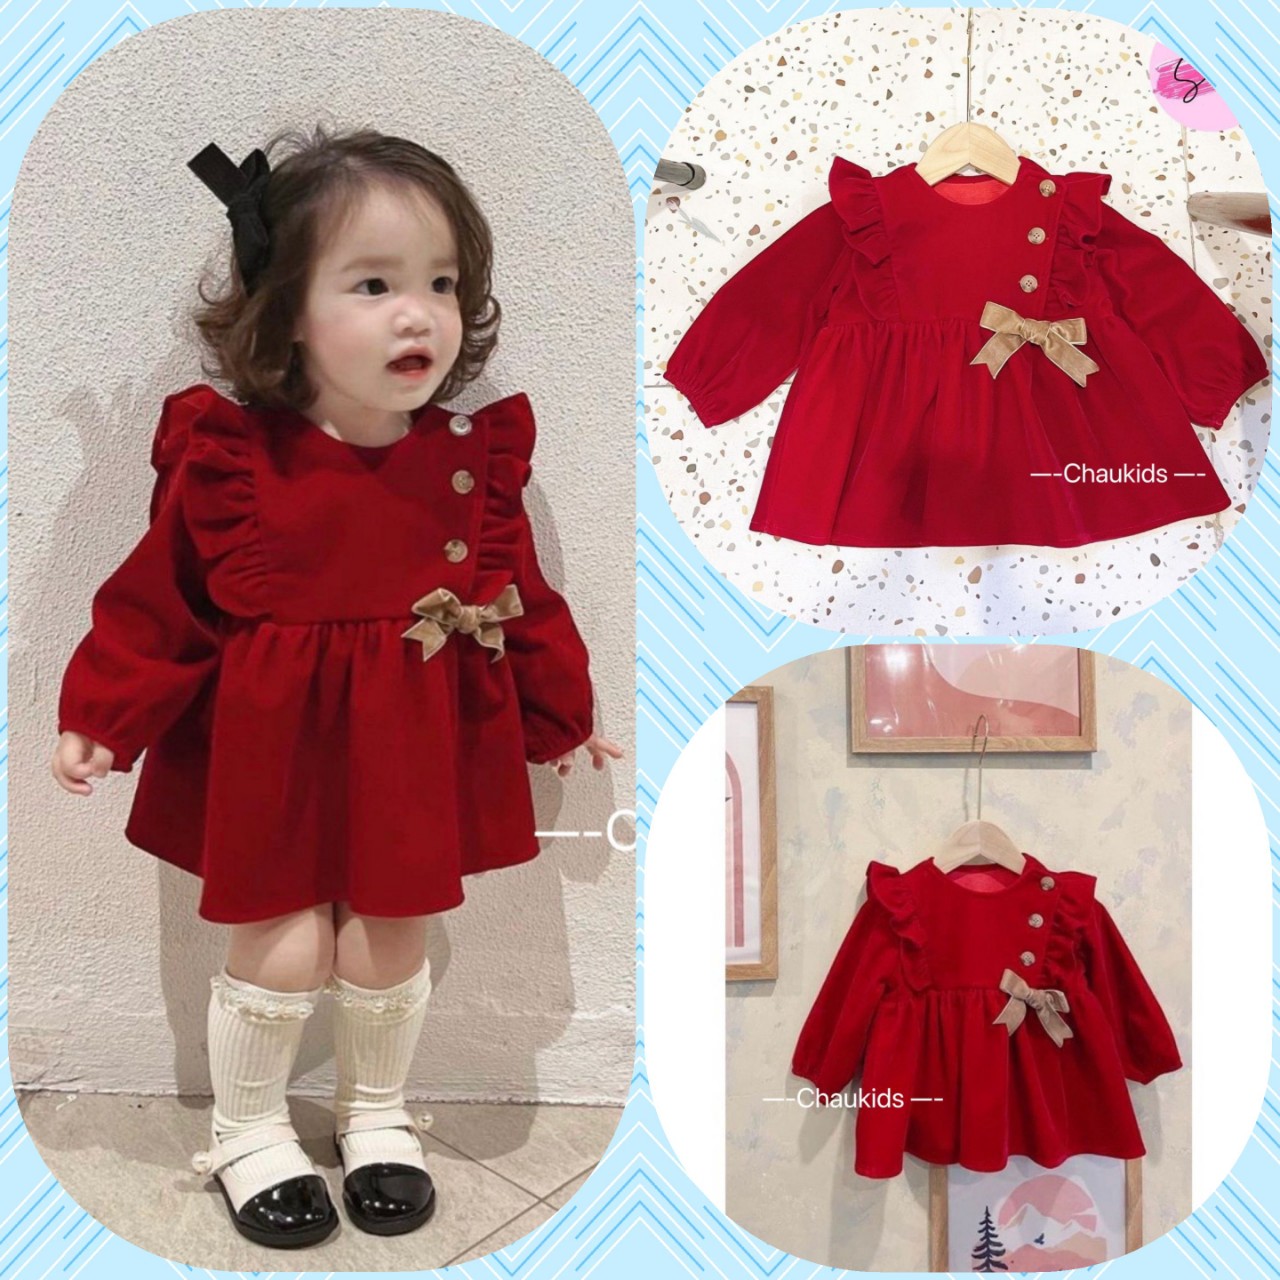 SP001244 Váy nhung đỏ cho bé gái 1-6 tuổi, SP000838 váy đỏ diện tết Noel  siêu xinh, đầm nhung đỏ cho bé SP003729 - Tìm Voucher